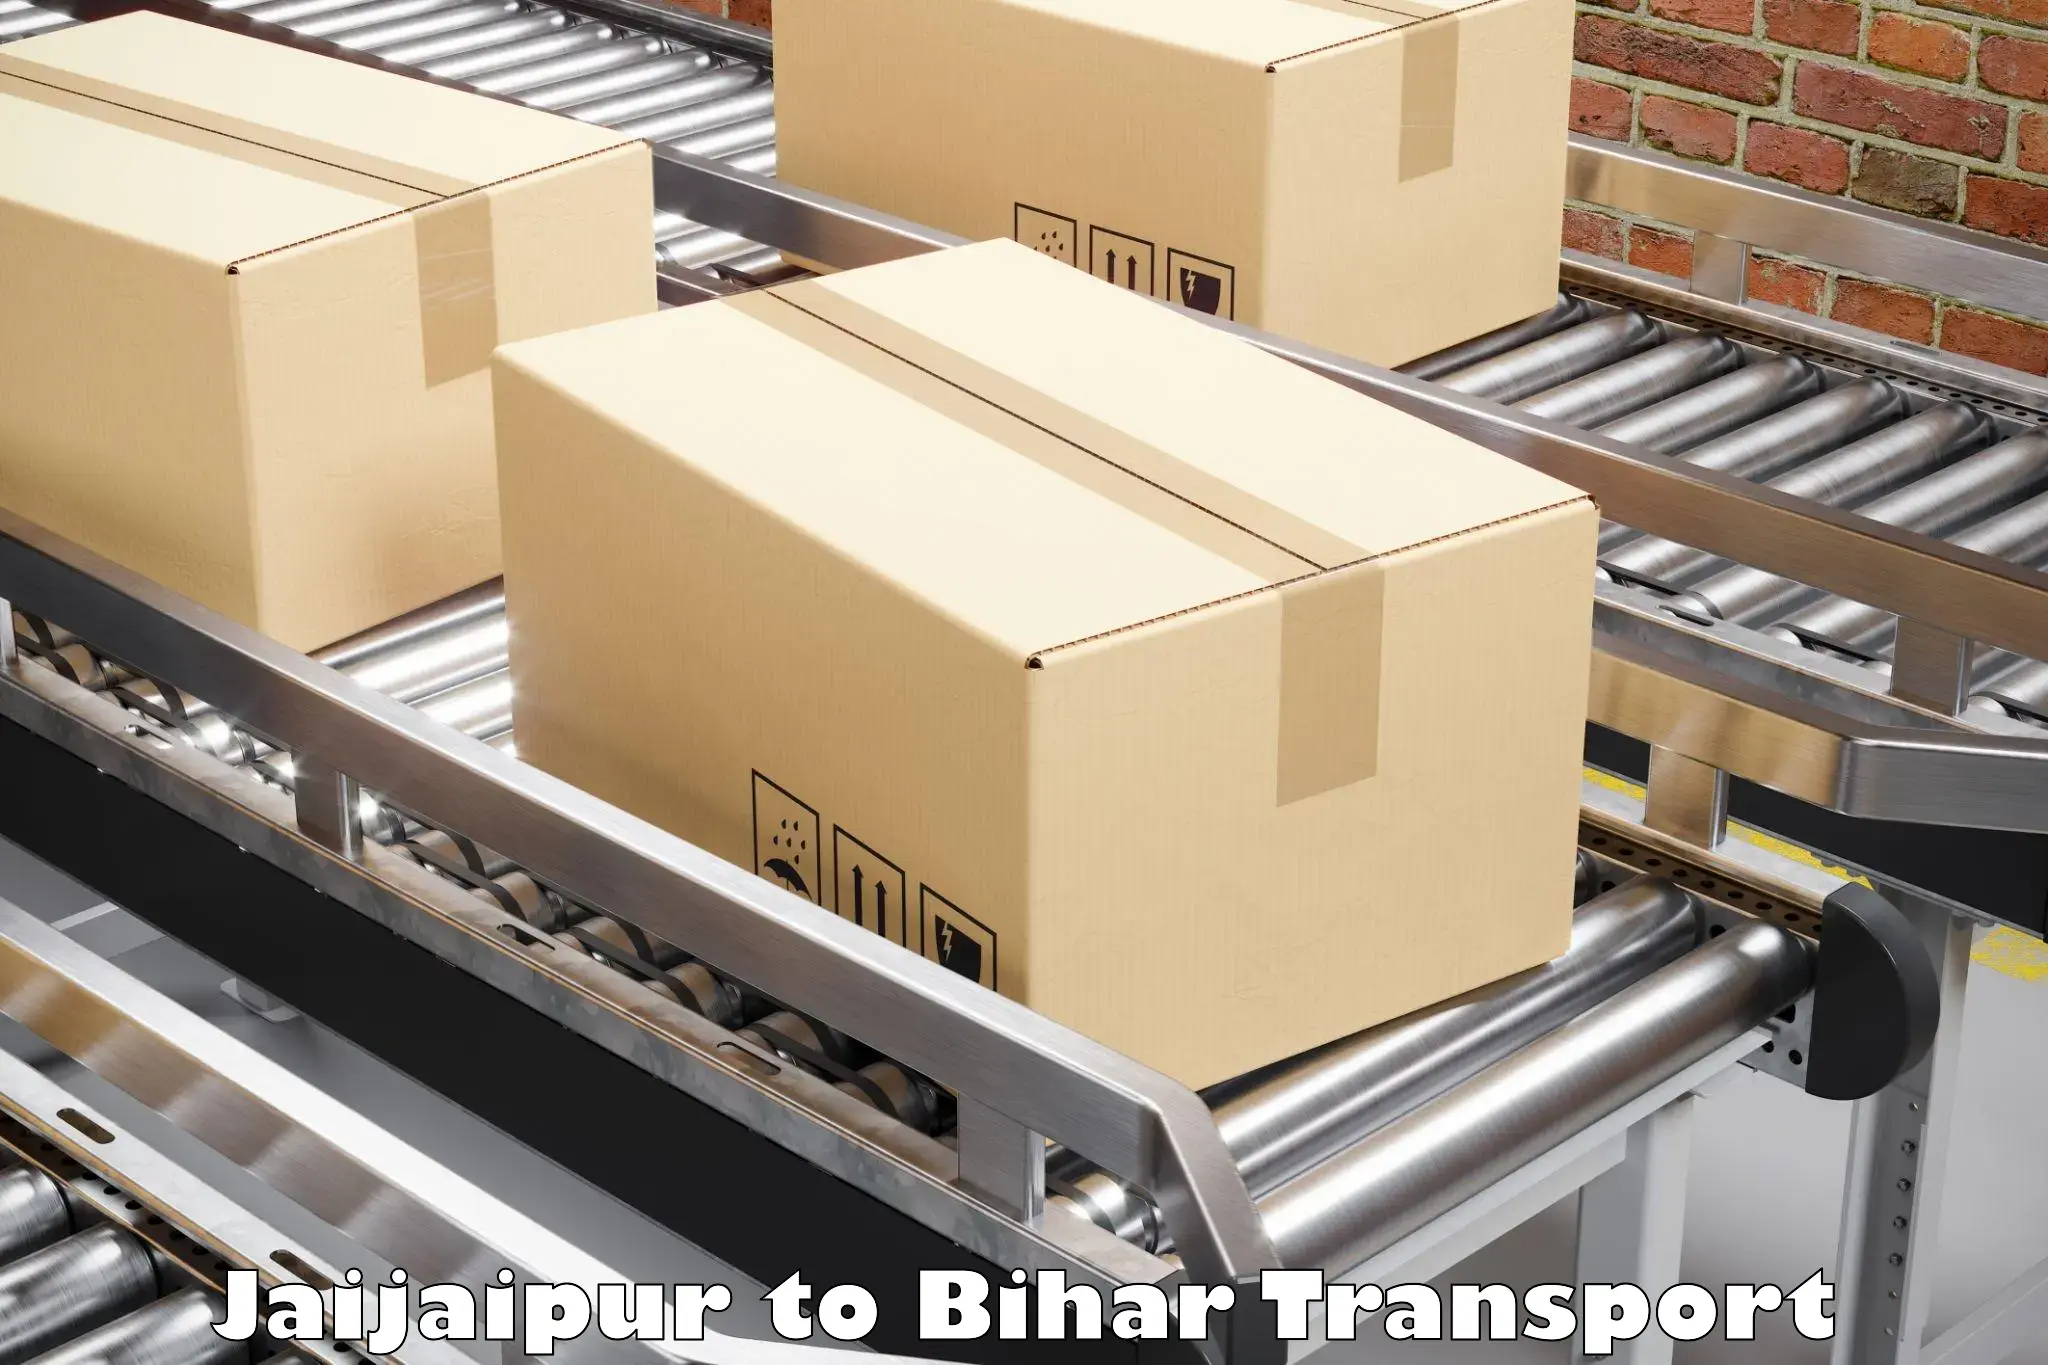 Cargo transport services Jaijaipur to Rajpur